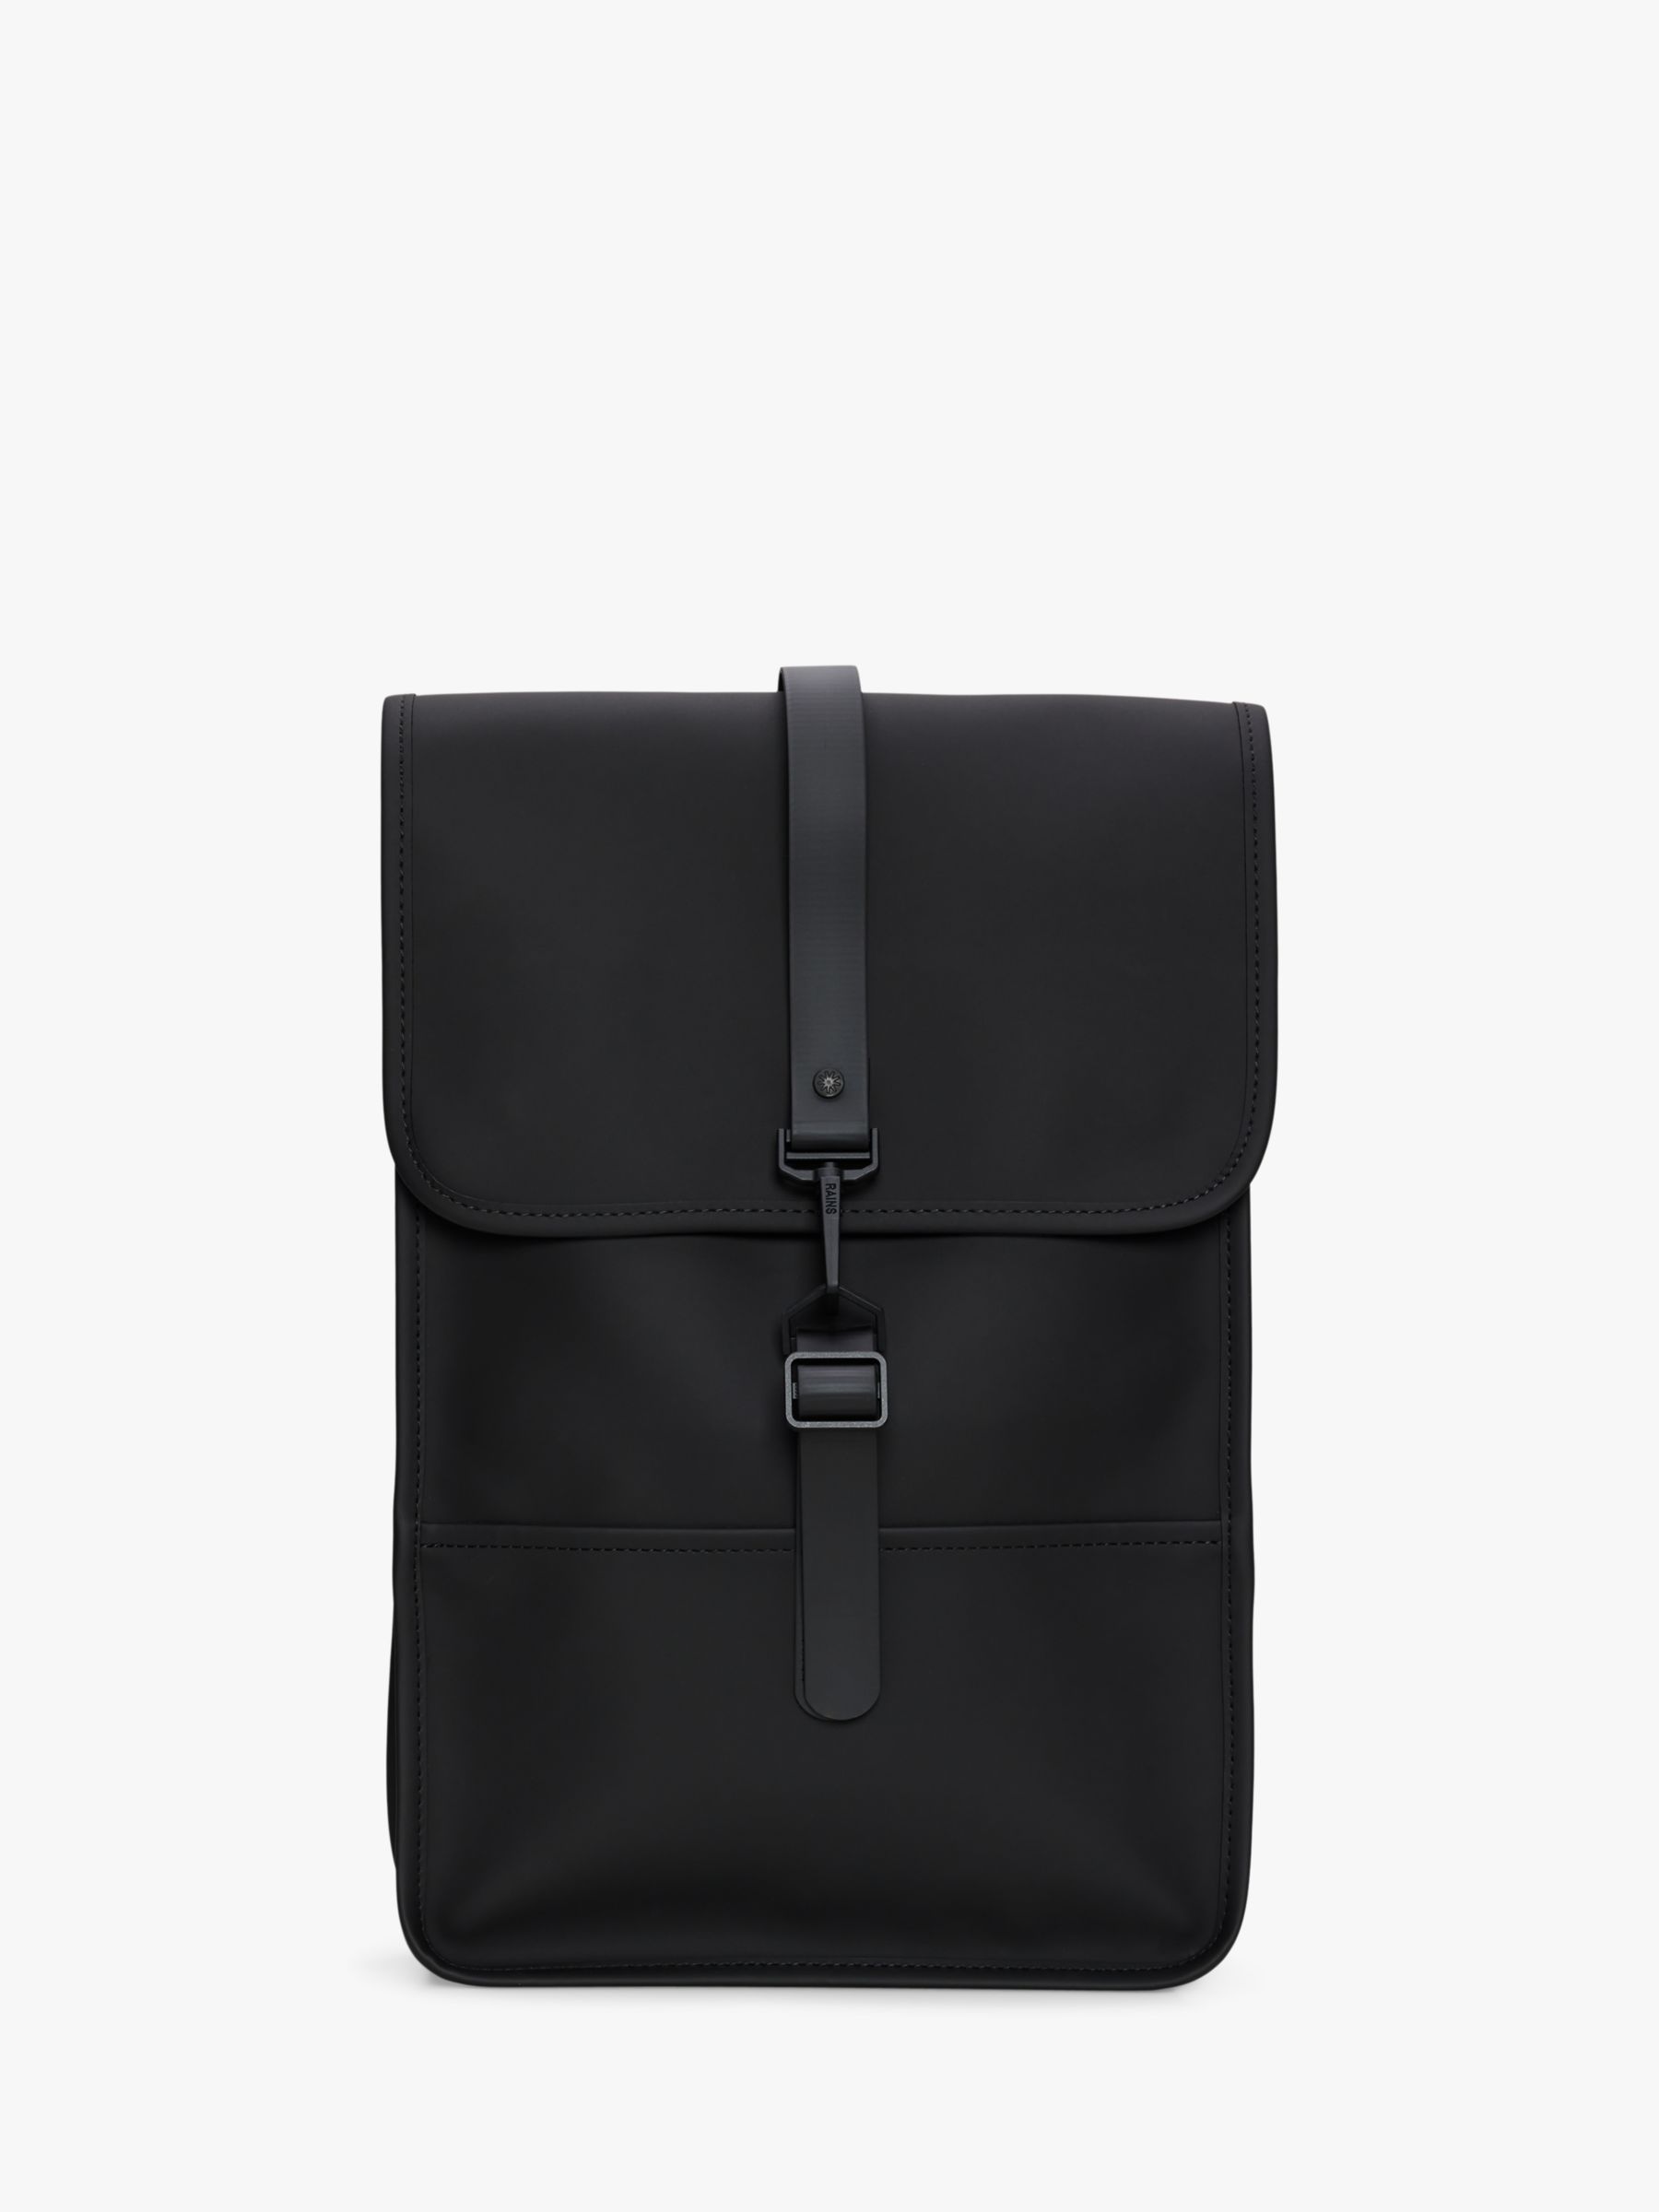 Классический мини-рюкзак Rains, черный backpack women